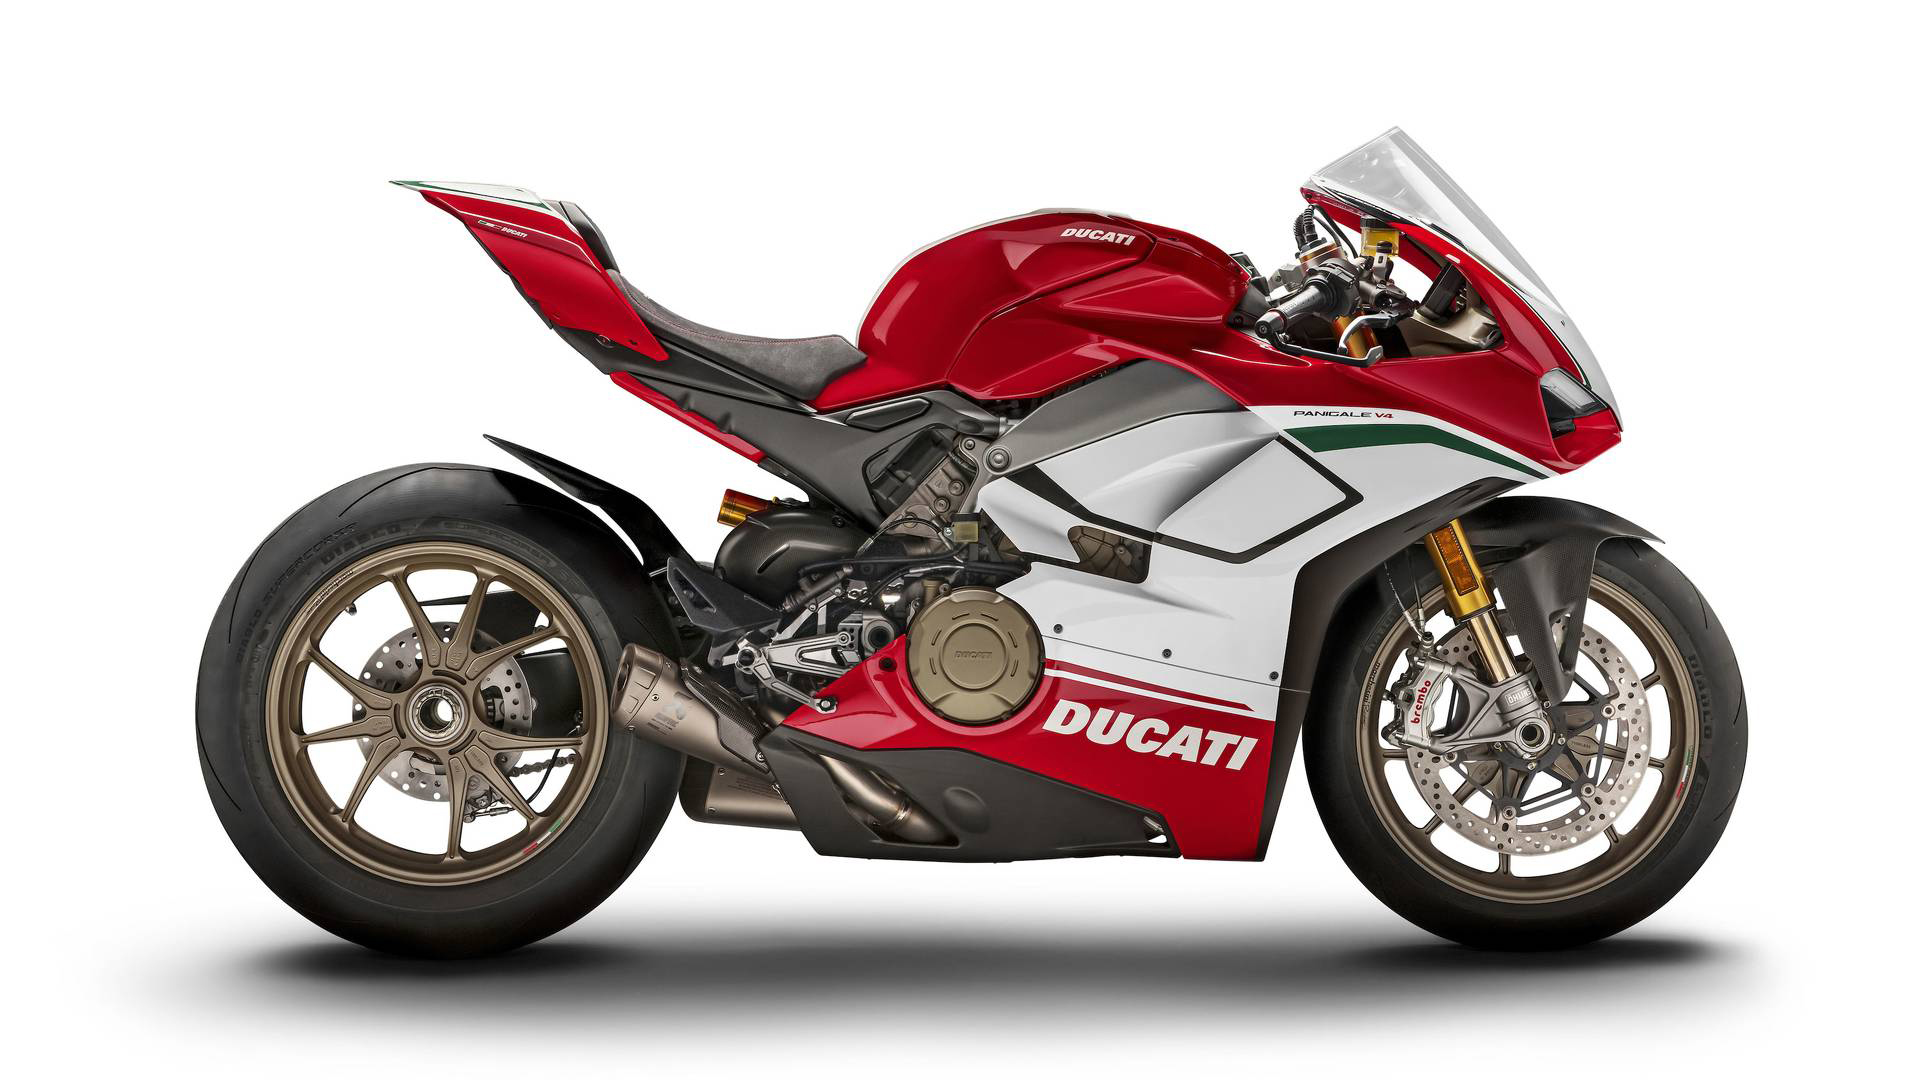 Categorias de motos e suas principais características – Ducati Campinas